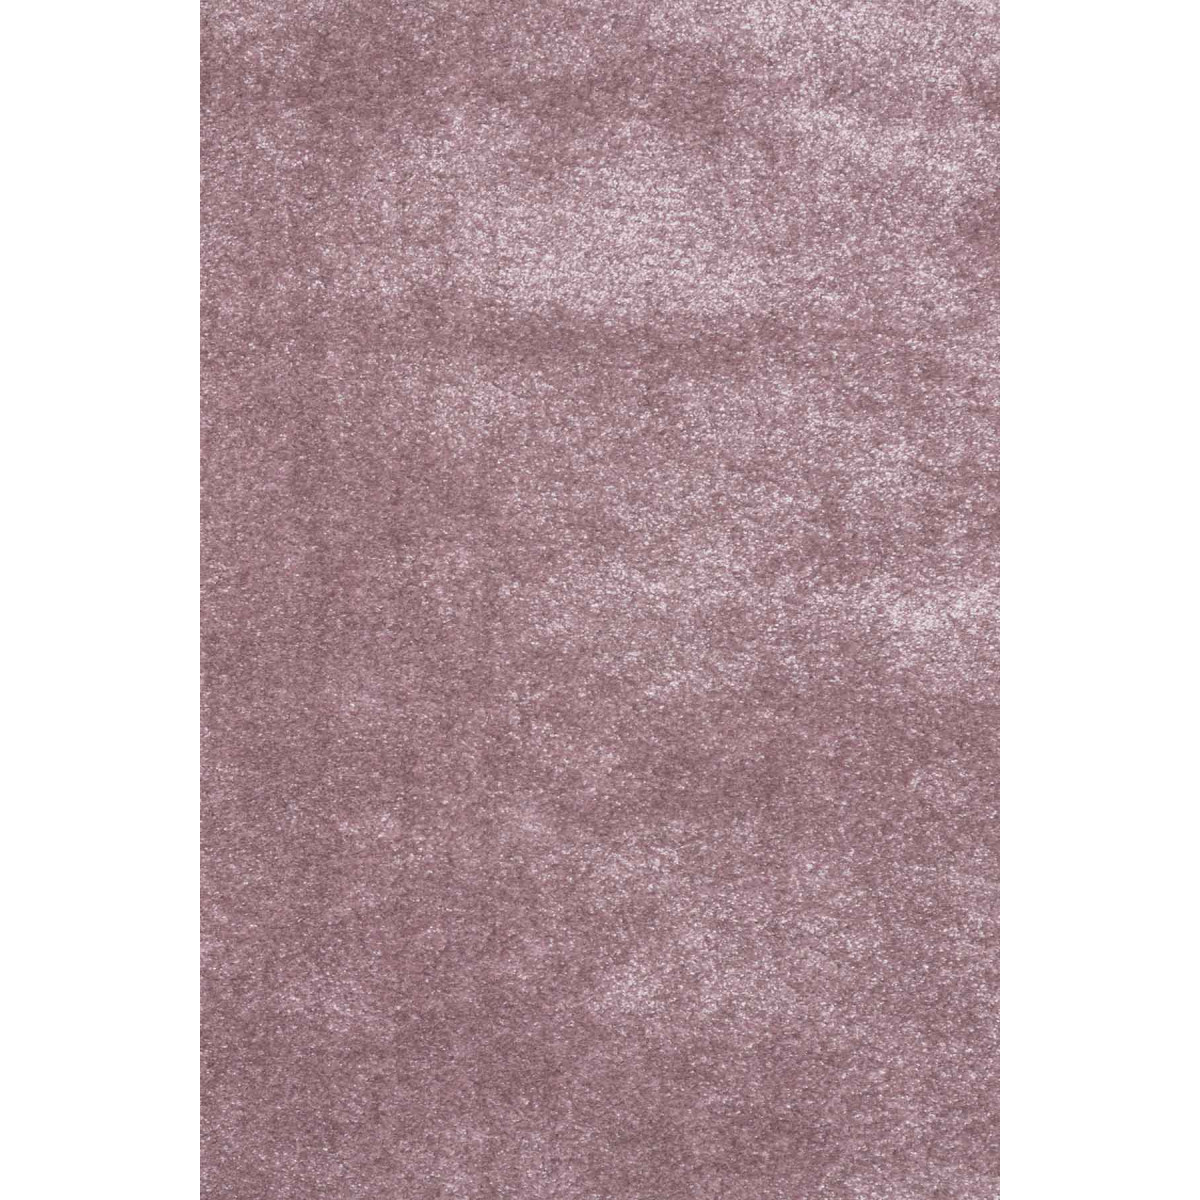 Kusový koberec Toscana 01 / RRR